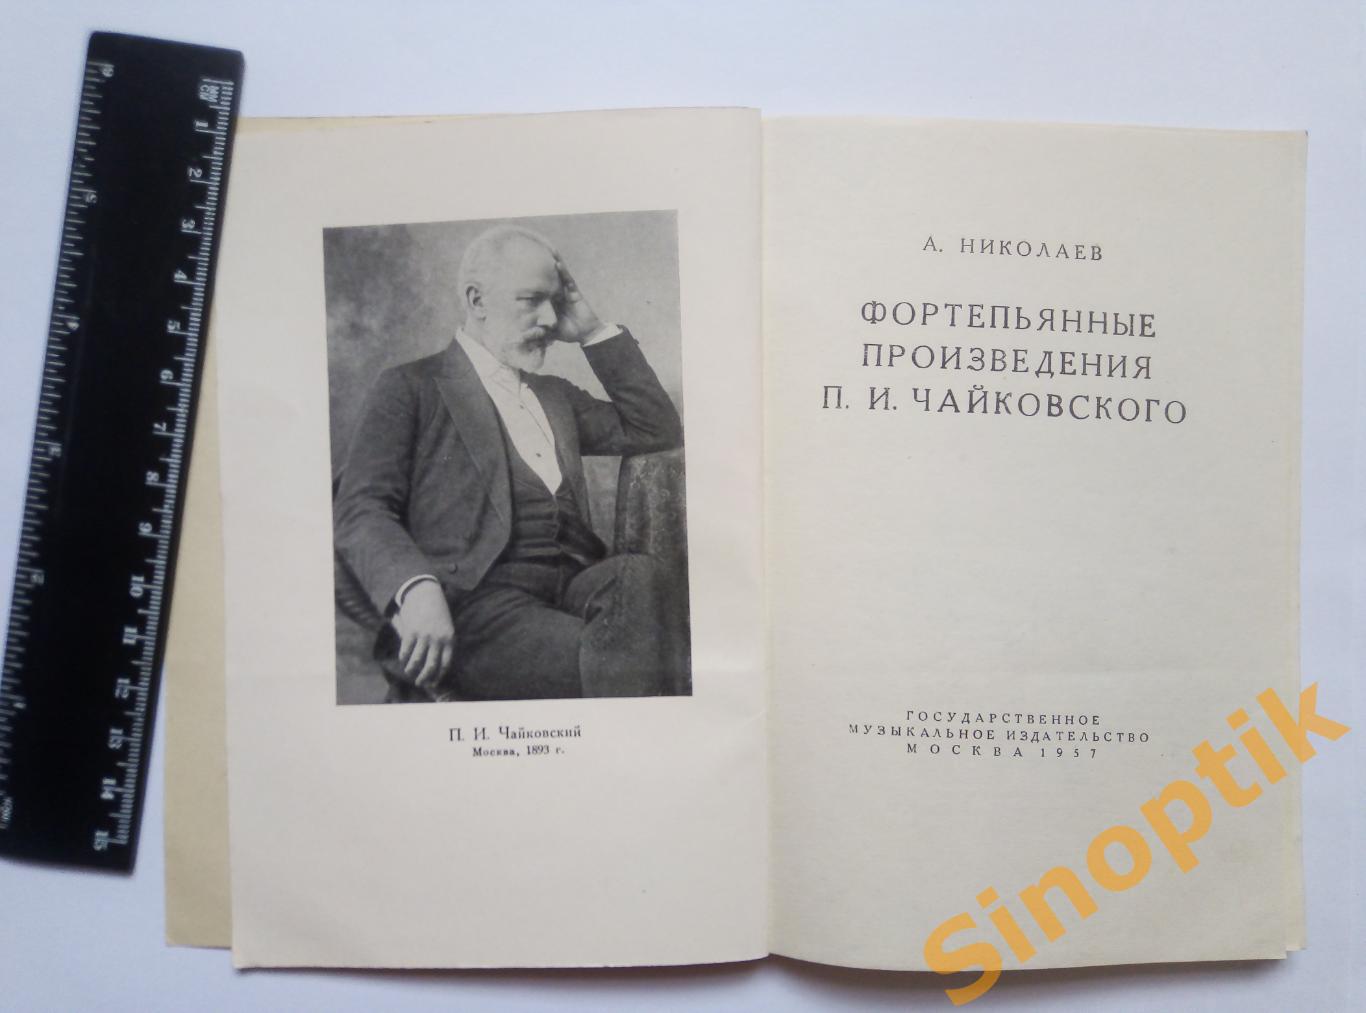 Фортепьянные произведения П. И. Чайковского, А. Николаев. 1957 1